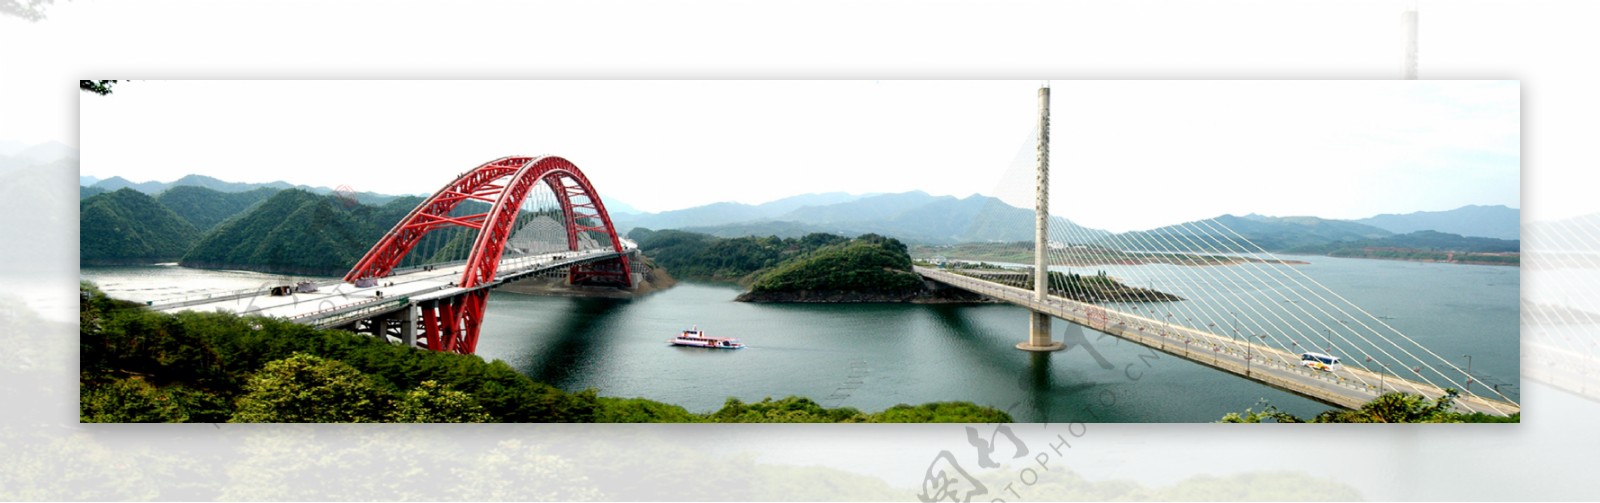 安徽黄山太平湖双桥非高清图片